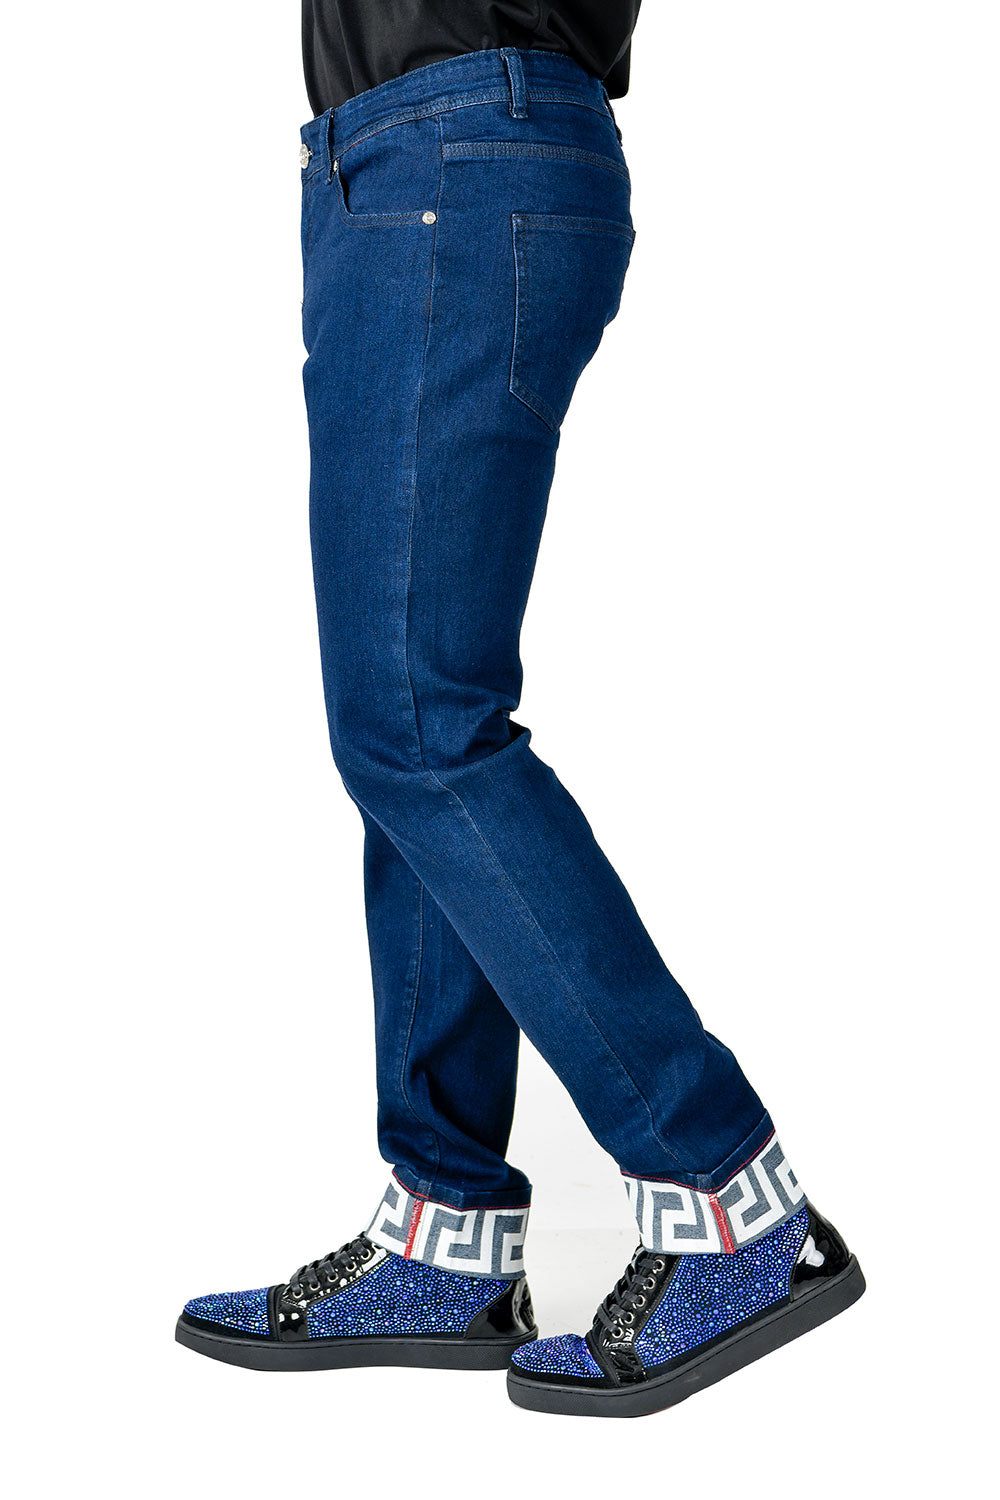 BARABAS Men's Greek Key Pattern Design Luxory Jeans SN8858 Blue